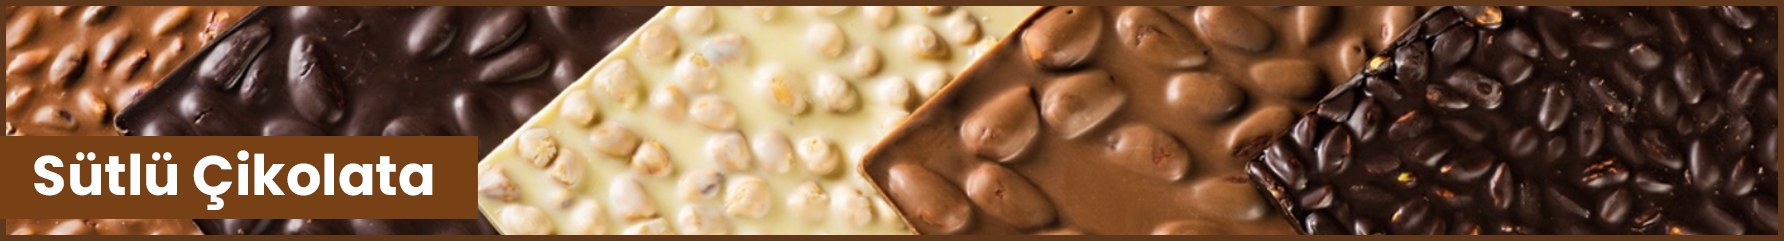 Sütlü Çikolata Nasıl Yapılır? ⭐️ Faydaları Nelerdir, Fiyatı Nedir?